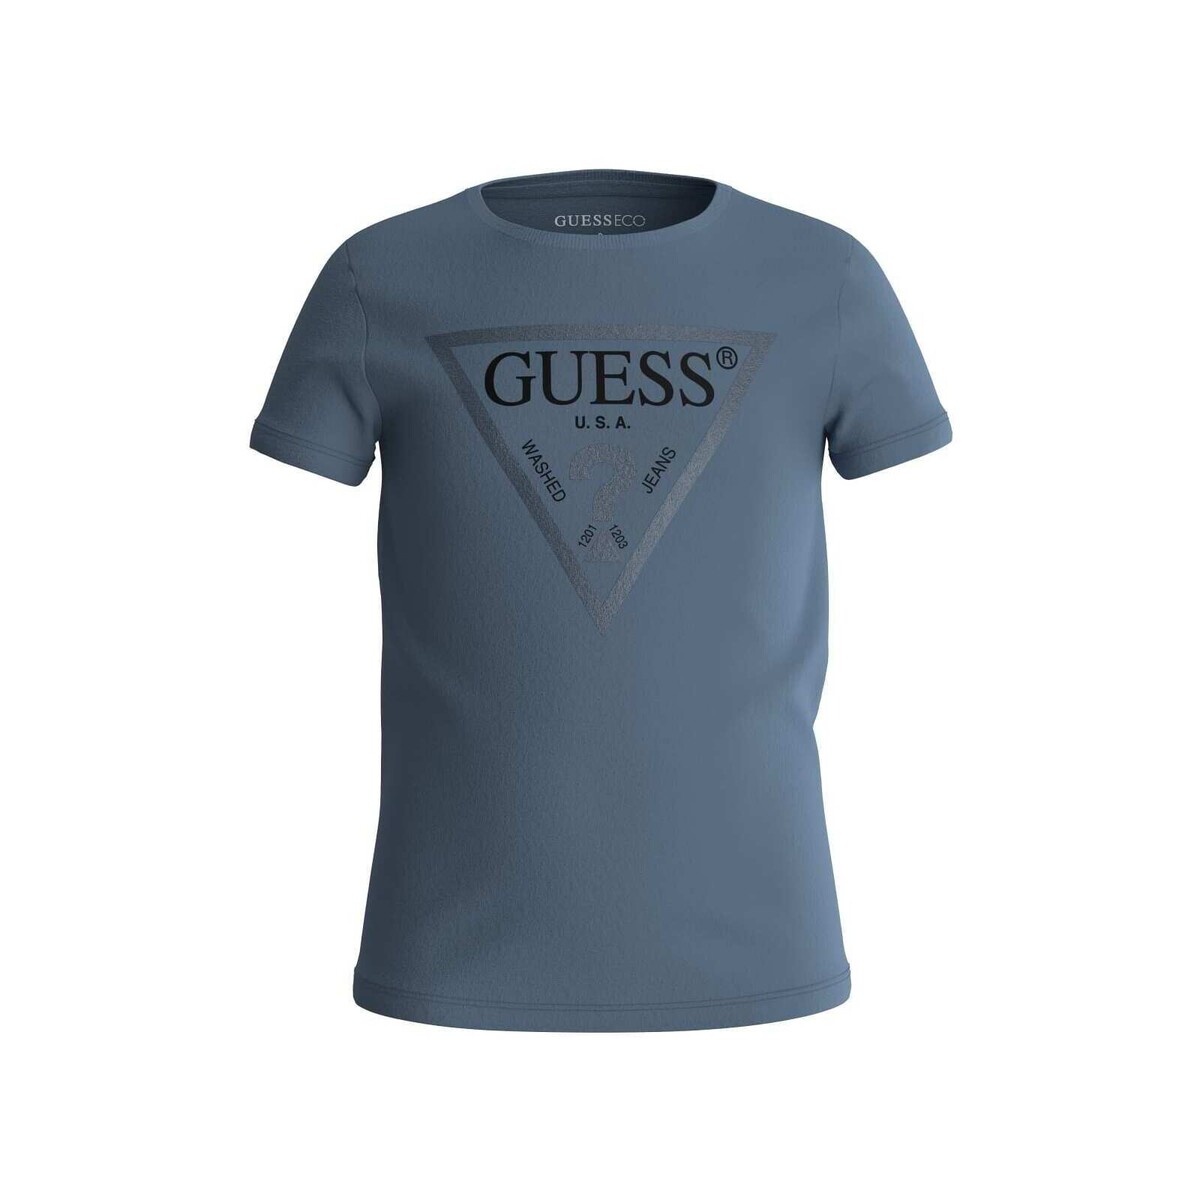 Vêtements Fille T-shirts manches courtes Sacoche Guess J73I56 Bleu